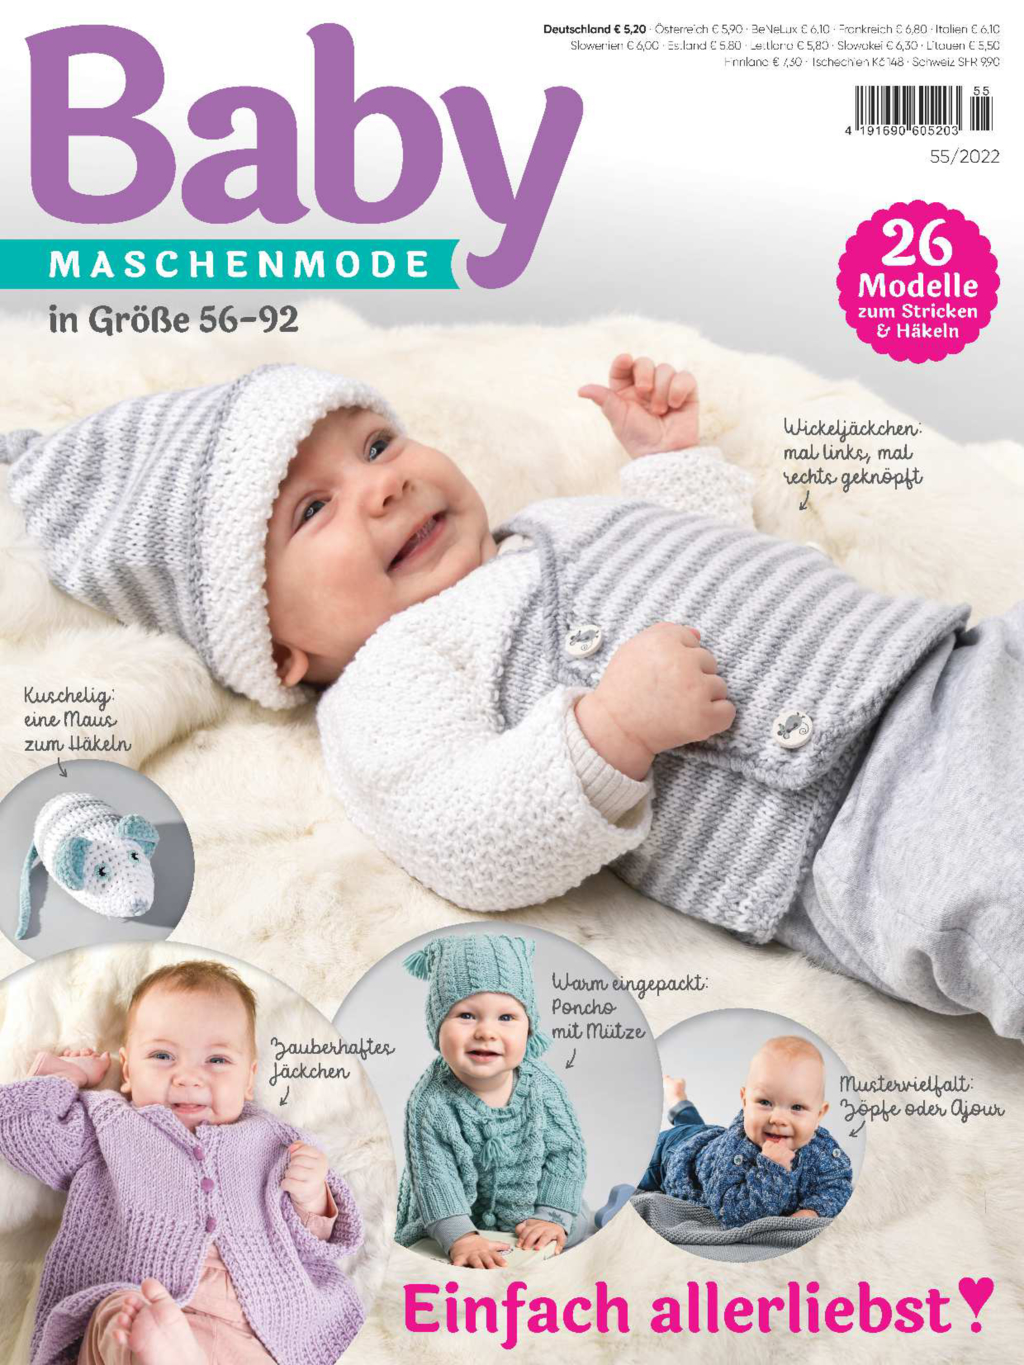 Baby Maschenmode E-Paper-Archiv 2022-alle Ausgaben als E-Paper-Sparpaket